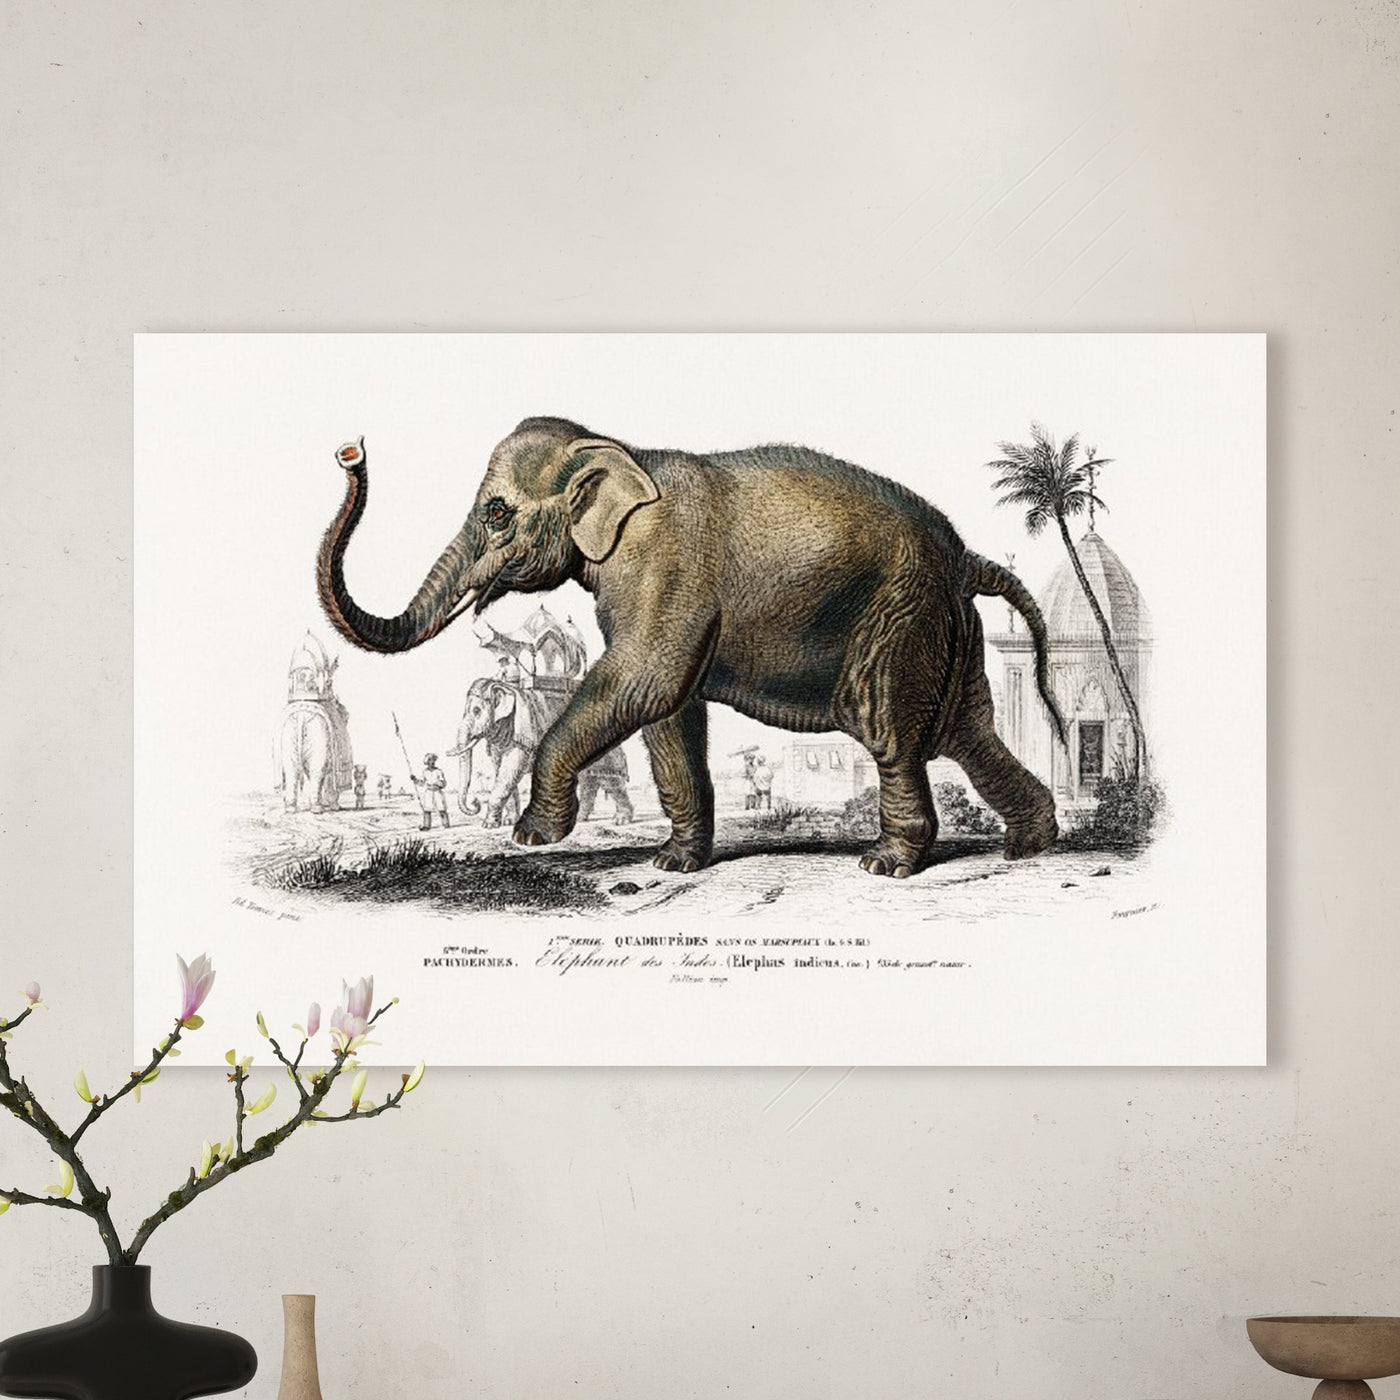 Asiatischer Elefant (Elephas maximus) indicus illustriert von Charles Dessalines D' Orbigny